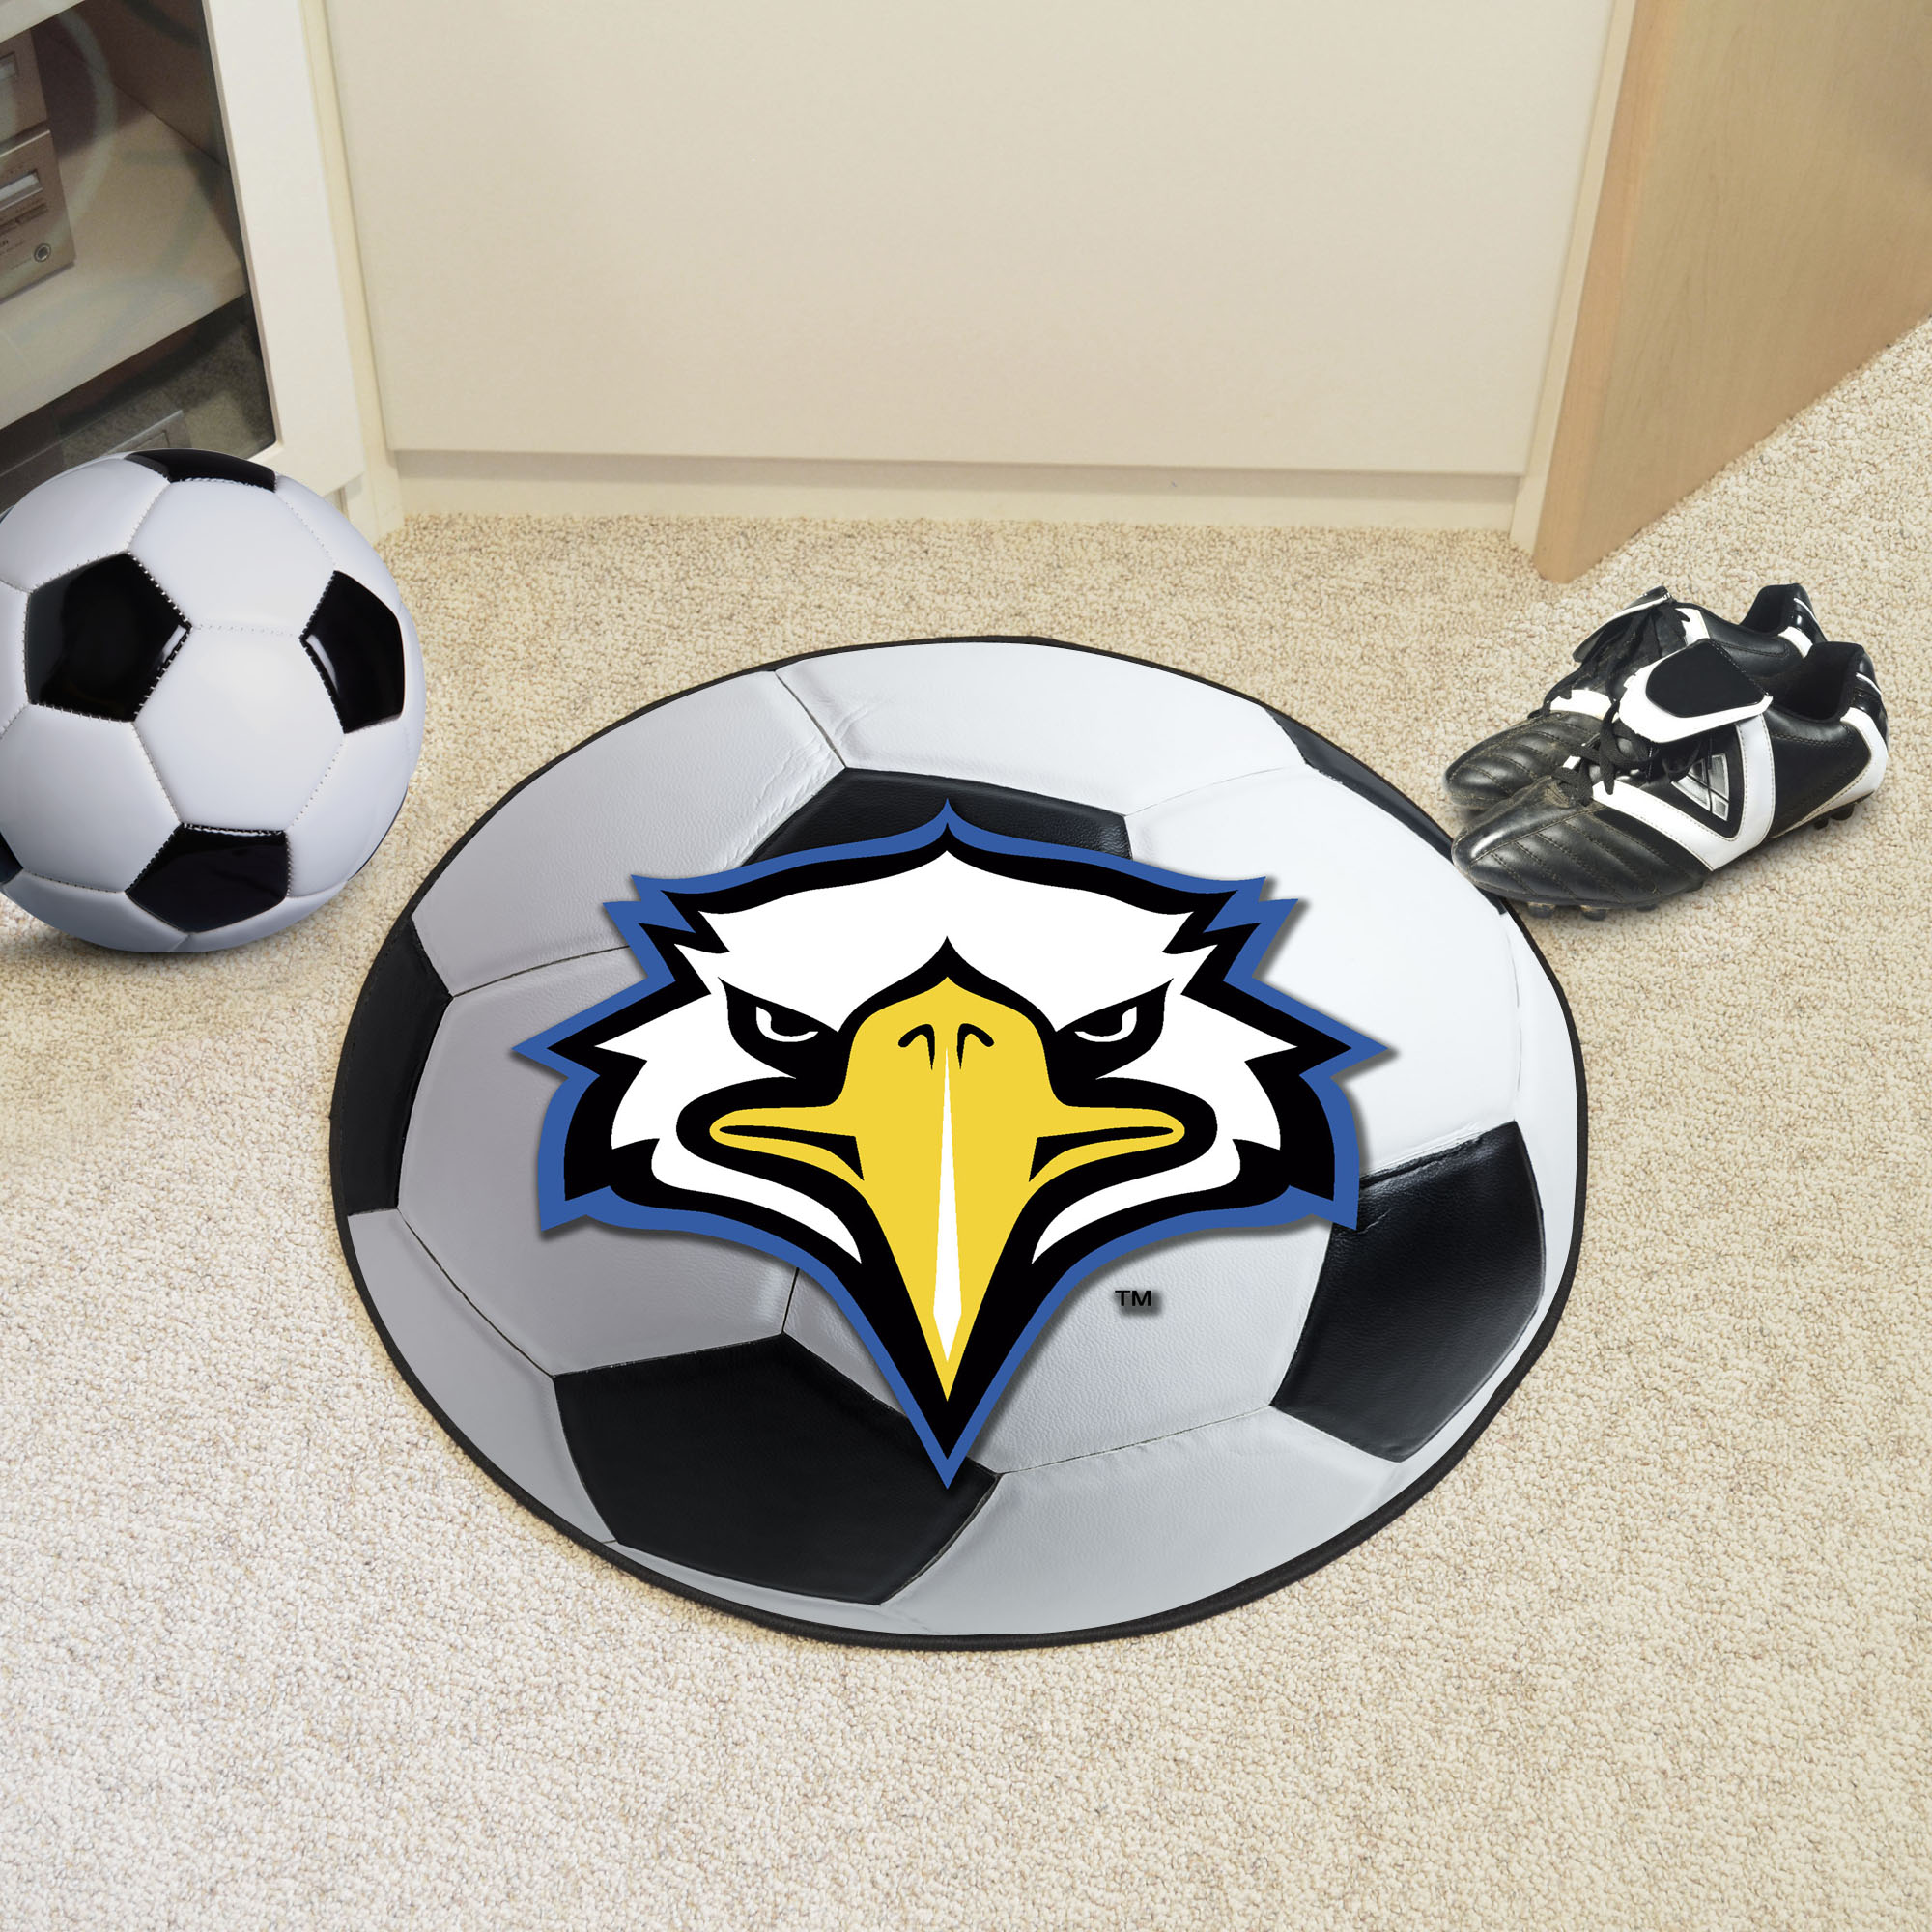 Kennesaw State University Mascot Ball-Shaped Area Rugs (Ball Shaped Area Rugs: Soccer Ball)